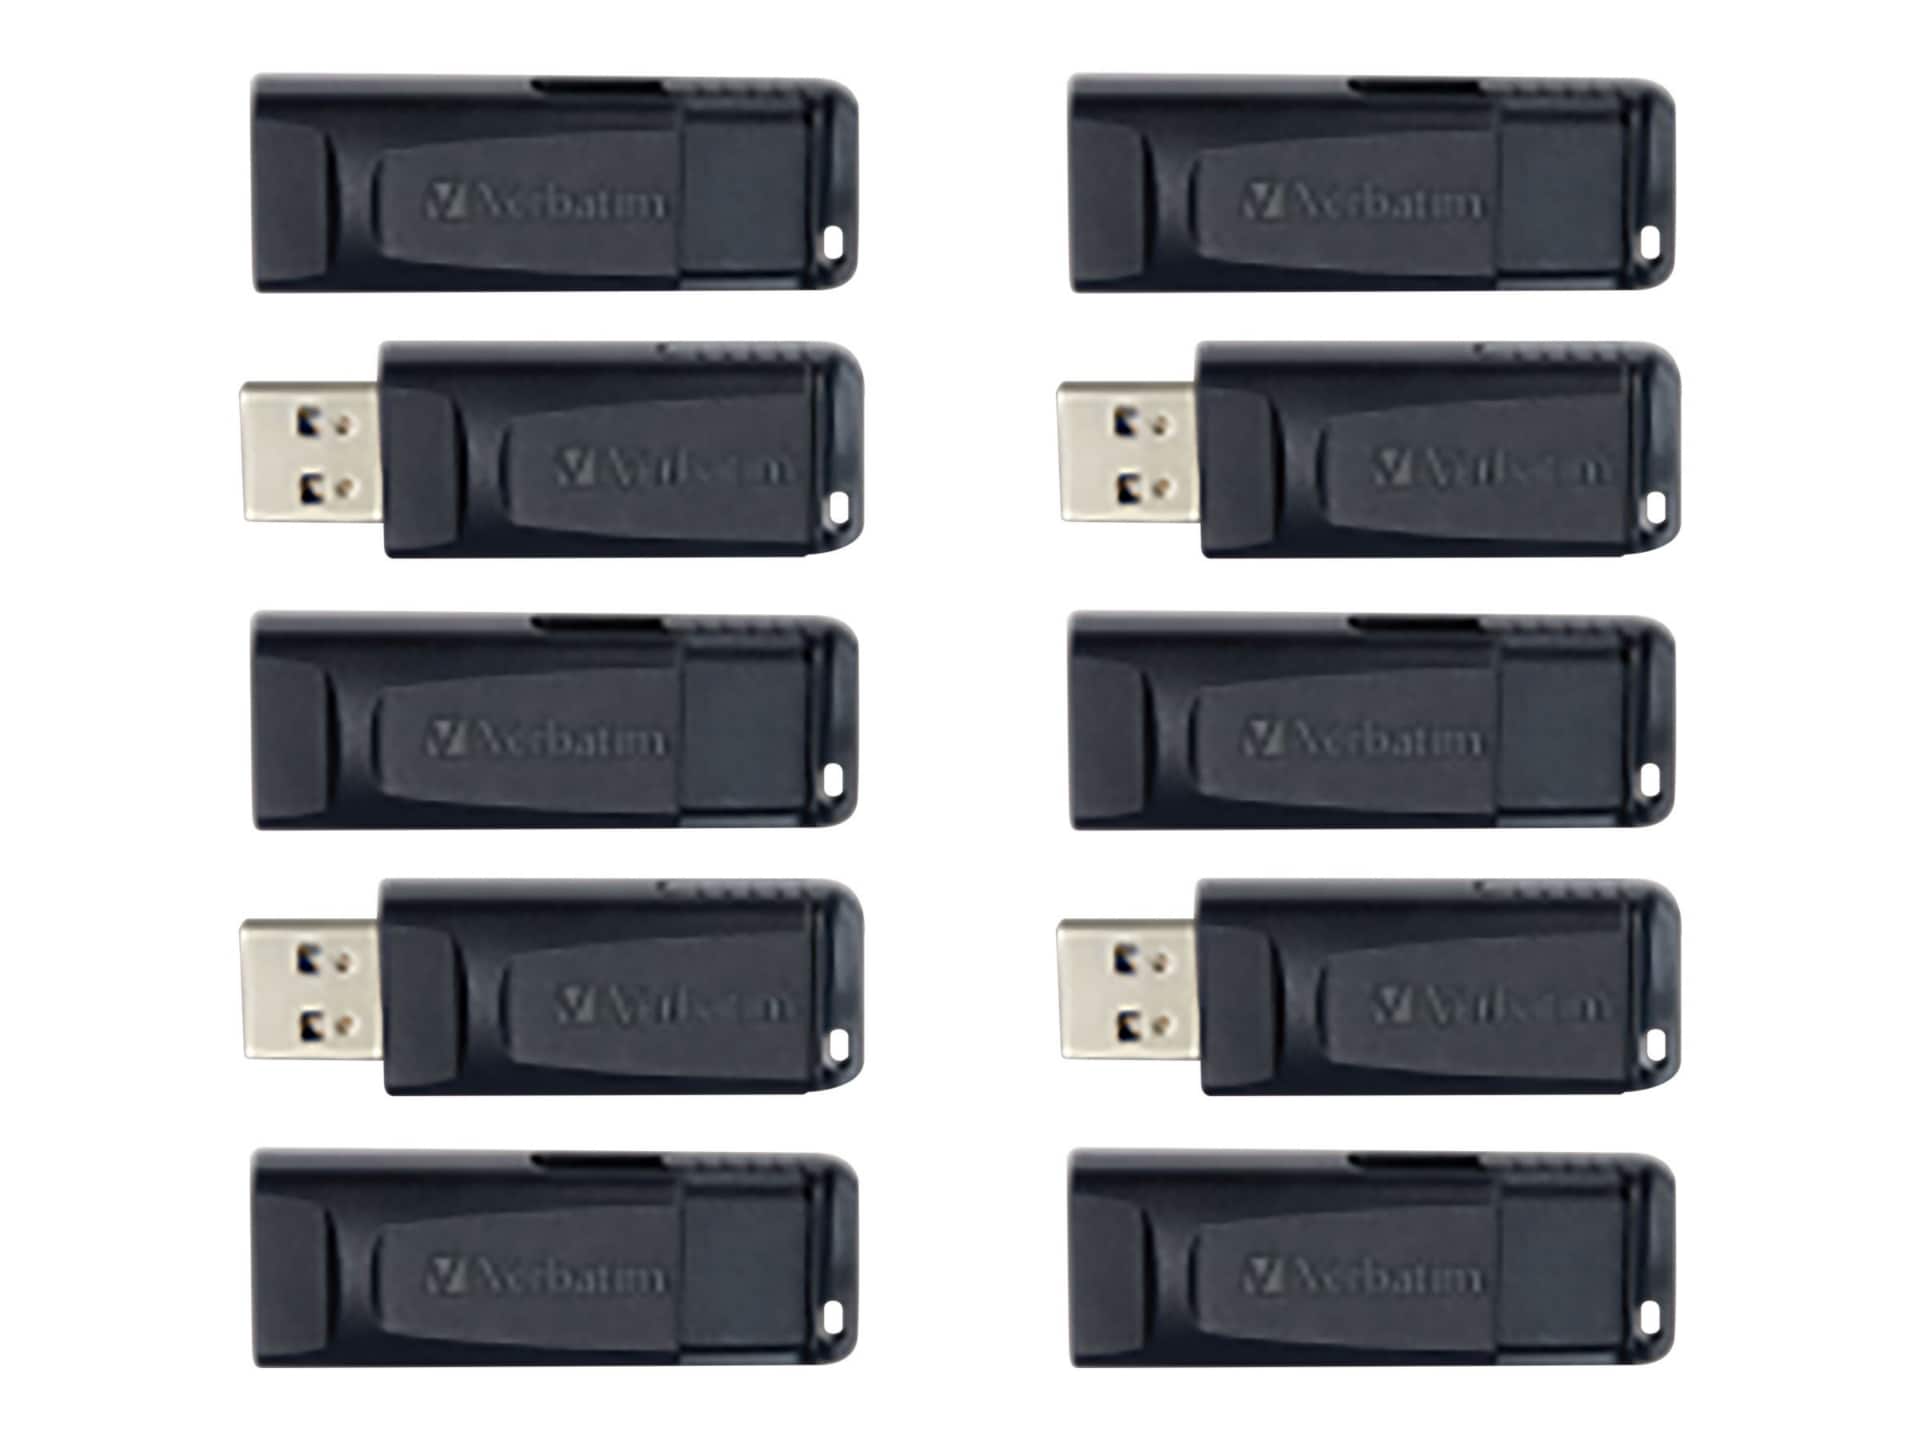 Verbatim Store 'n' Go - USB flash drive - 64 GB